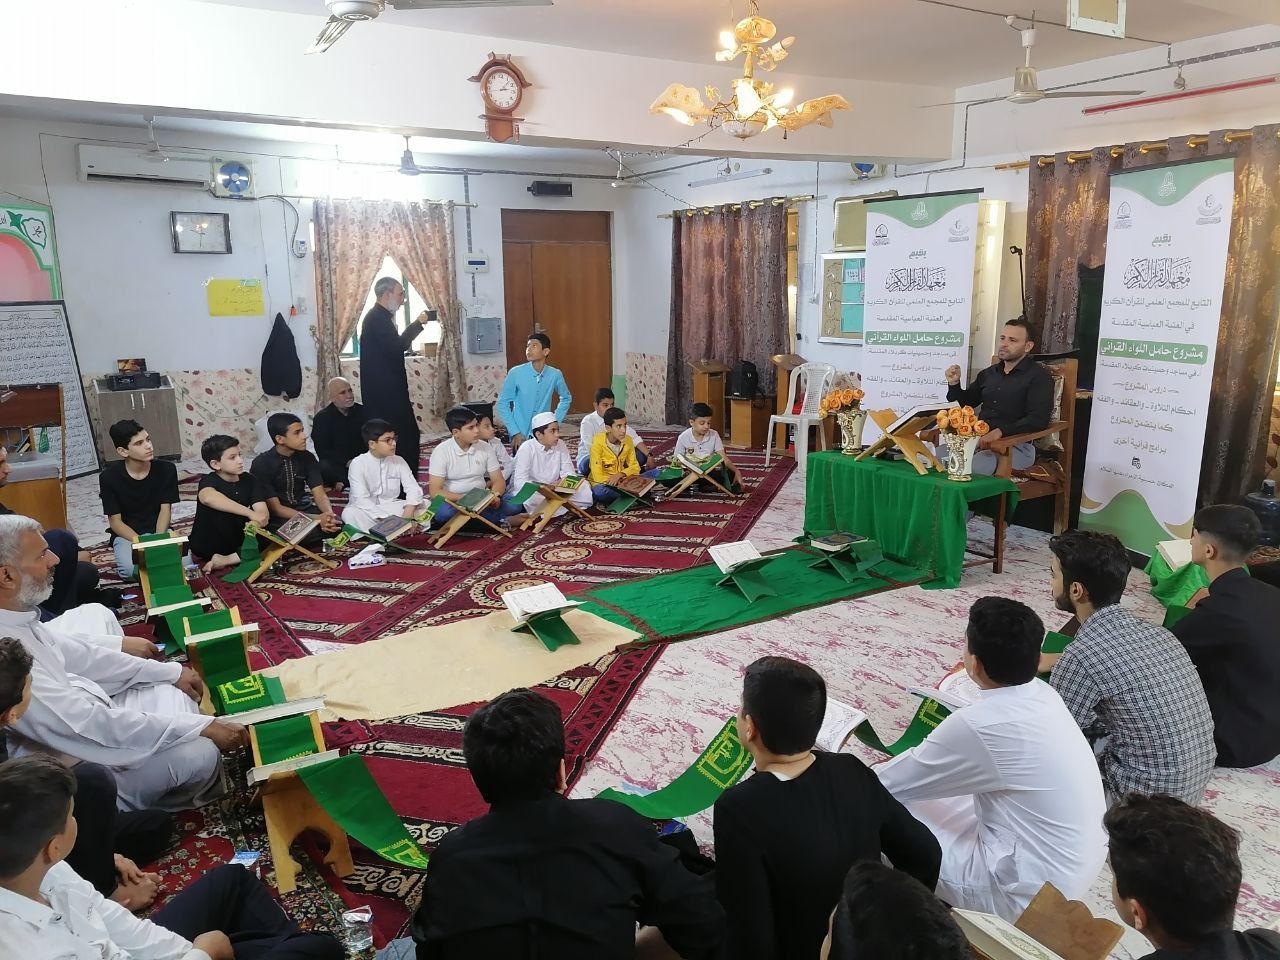 معهد القرآن الكريم يقيم ملتقى قرآنيًا بين مساجد وحسينيات كربلاء المقدسة